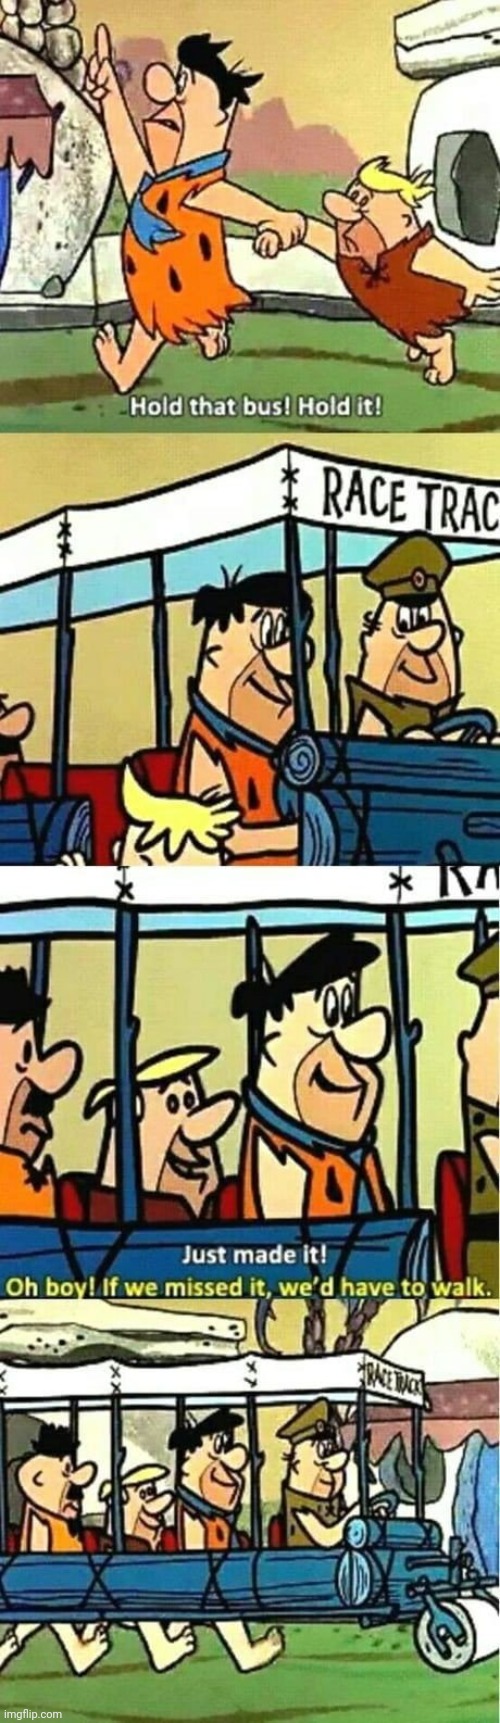 Flintstones. | image tagged in flintstones,middle school,memes | made w/ Imgflip meme maker